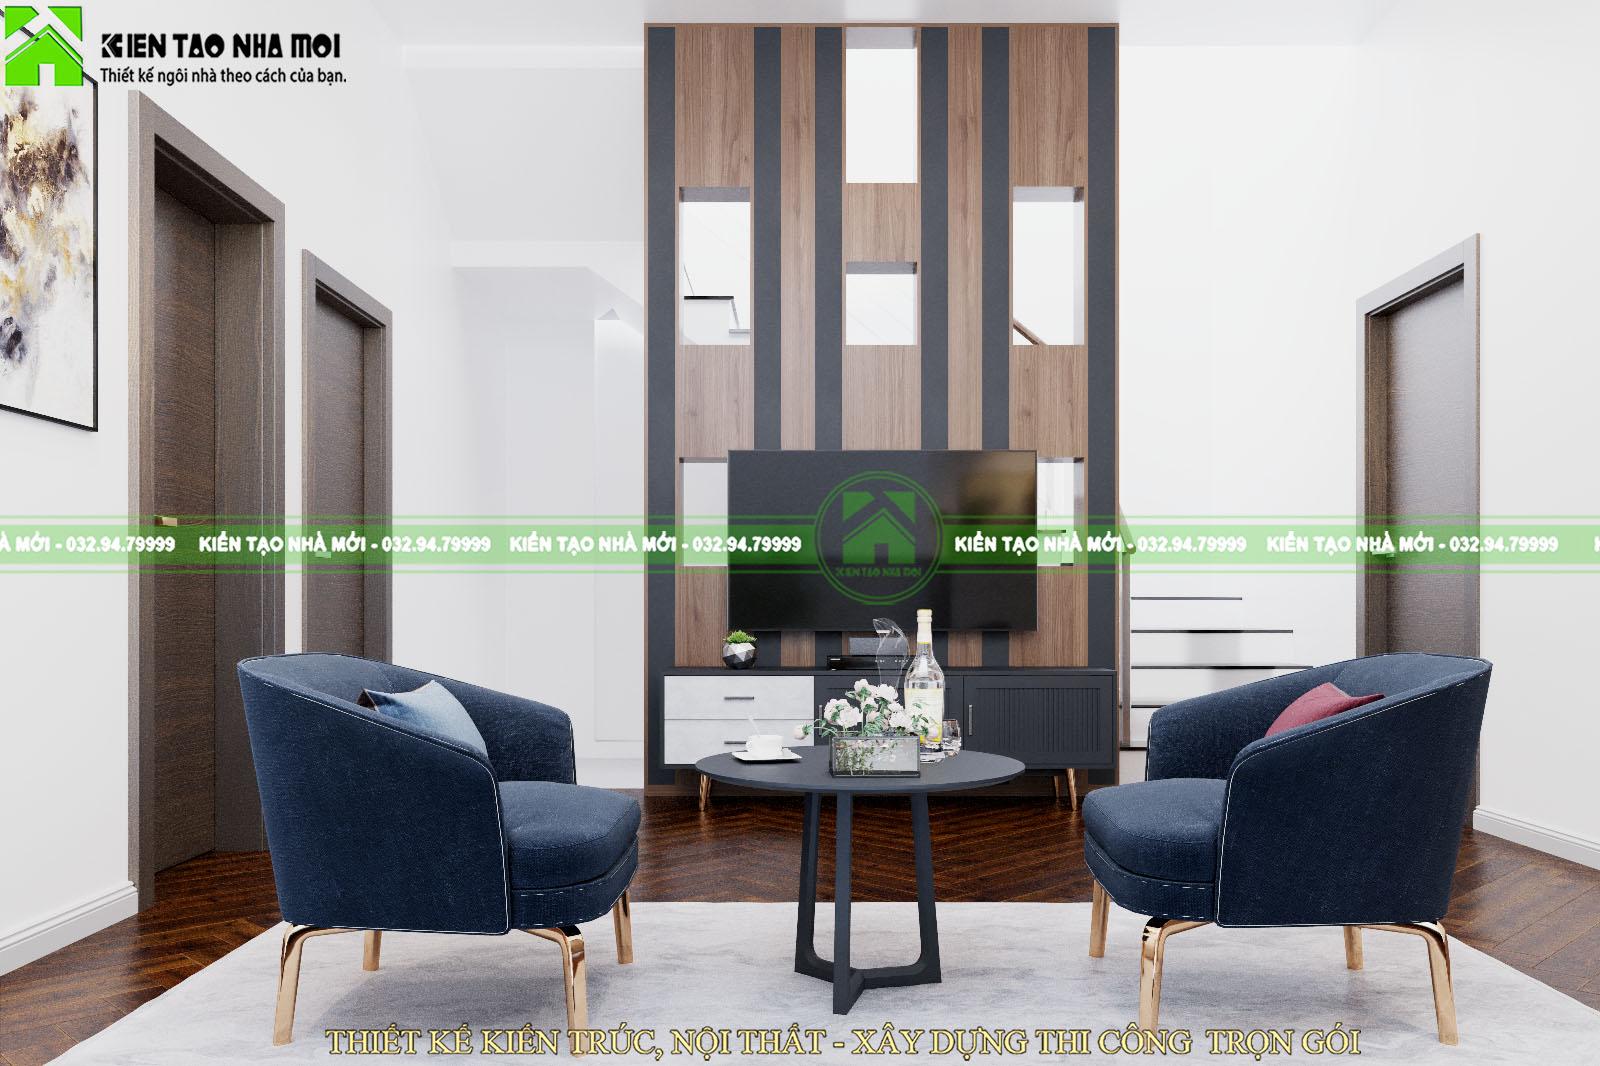 Thiết kế nội thất Biệt Thự tại Phú Thọ Thiết kế nội thất nhà ở đẹp, hiện đại tại Phú Thọ 1588576336 11